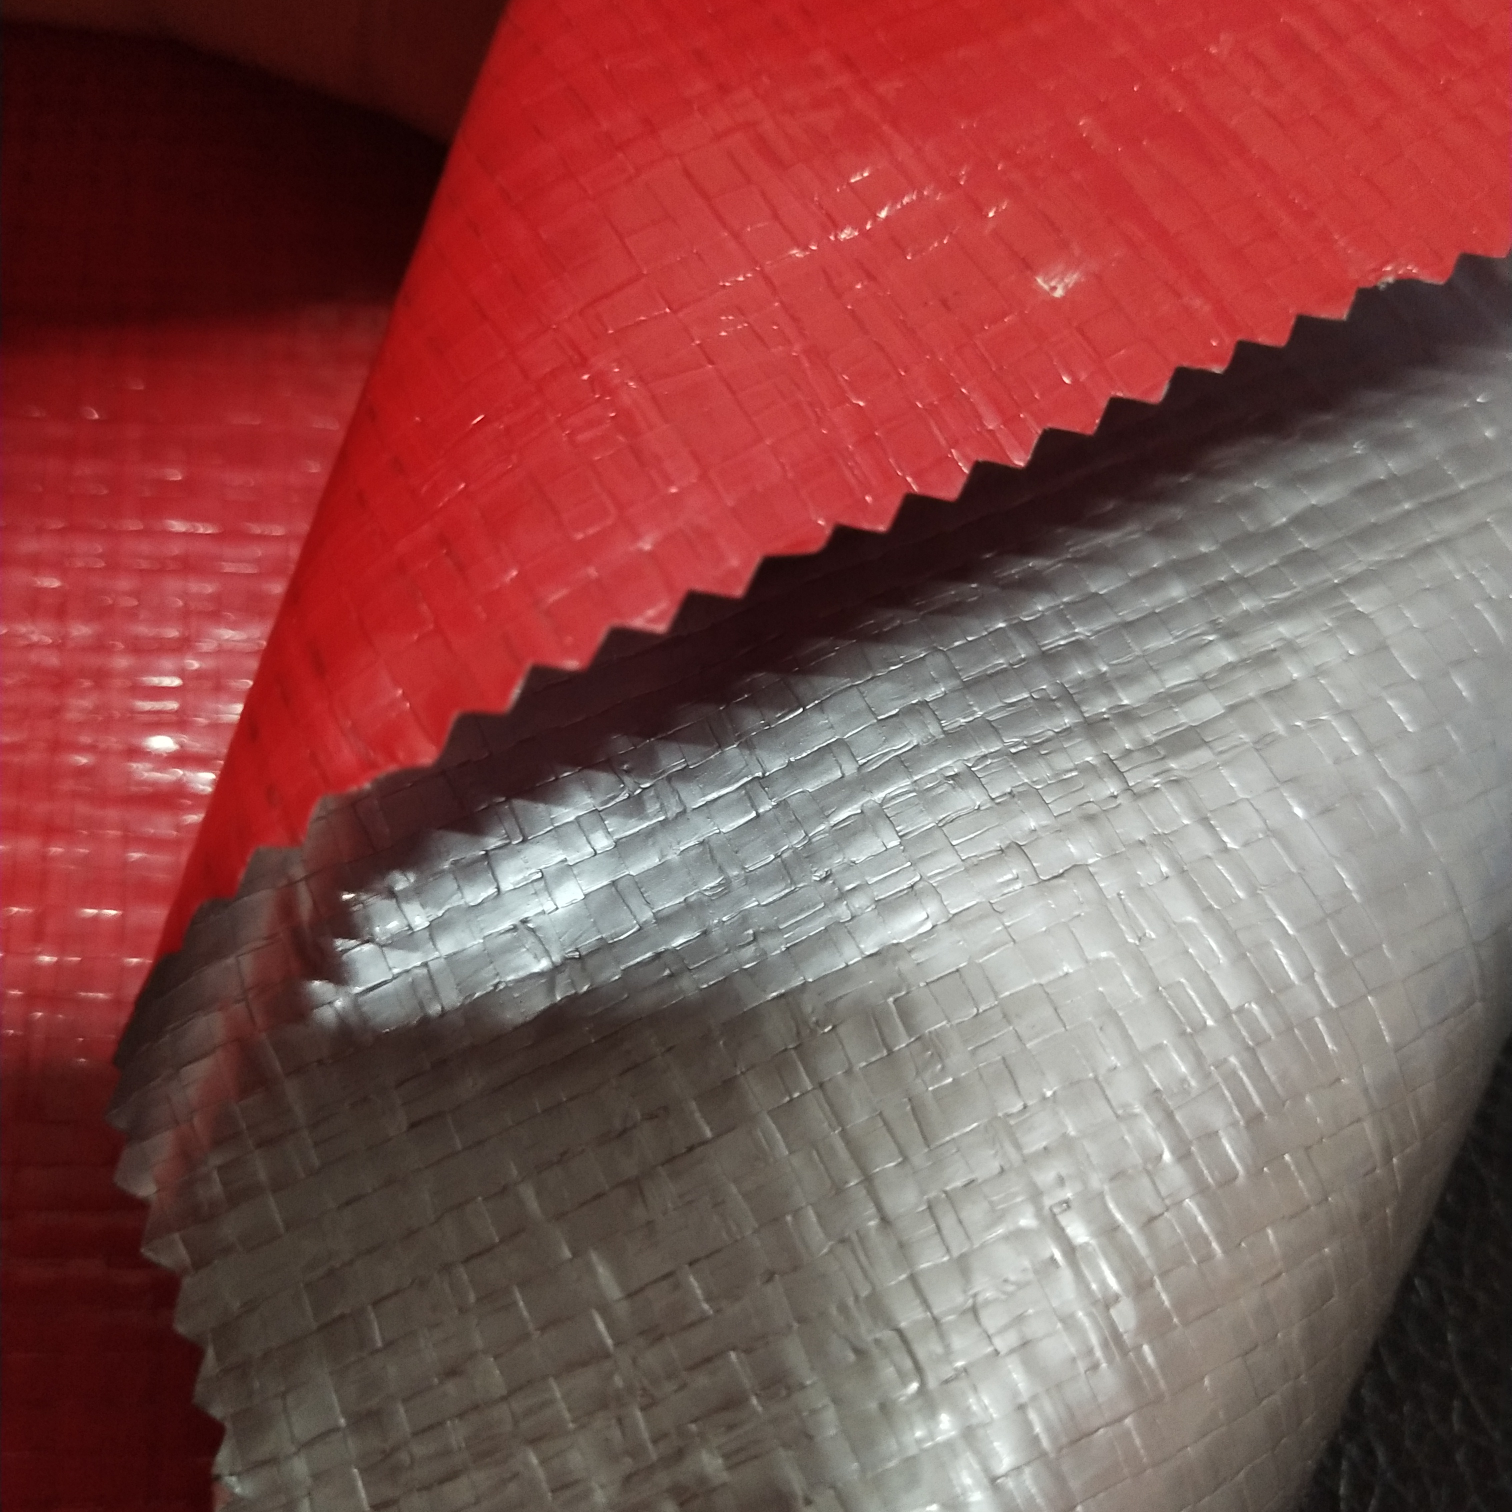 双面淋膜200克银红色PE防水布  塑料编织布  适用于花房篷布 汽车篷布 帐篷底布 各种手提袋  收纳箱专用面料